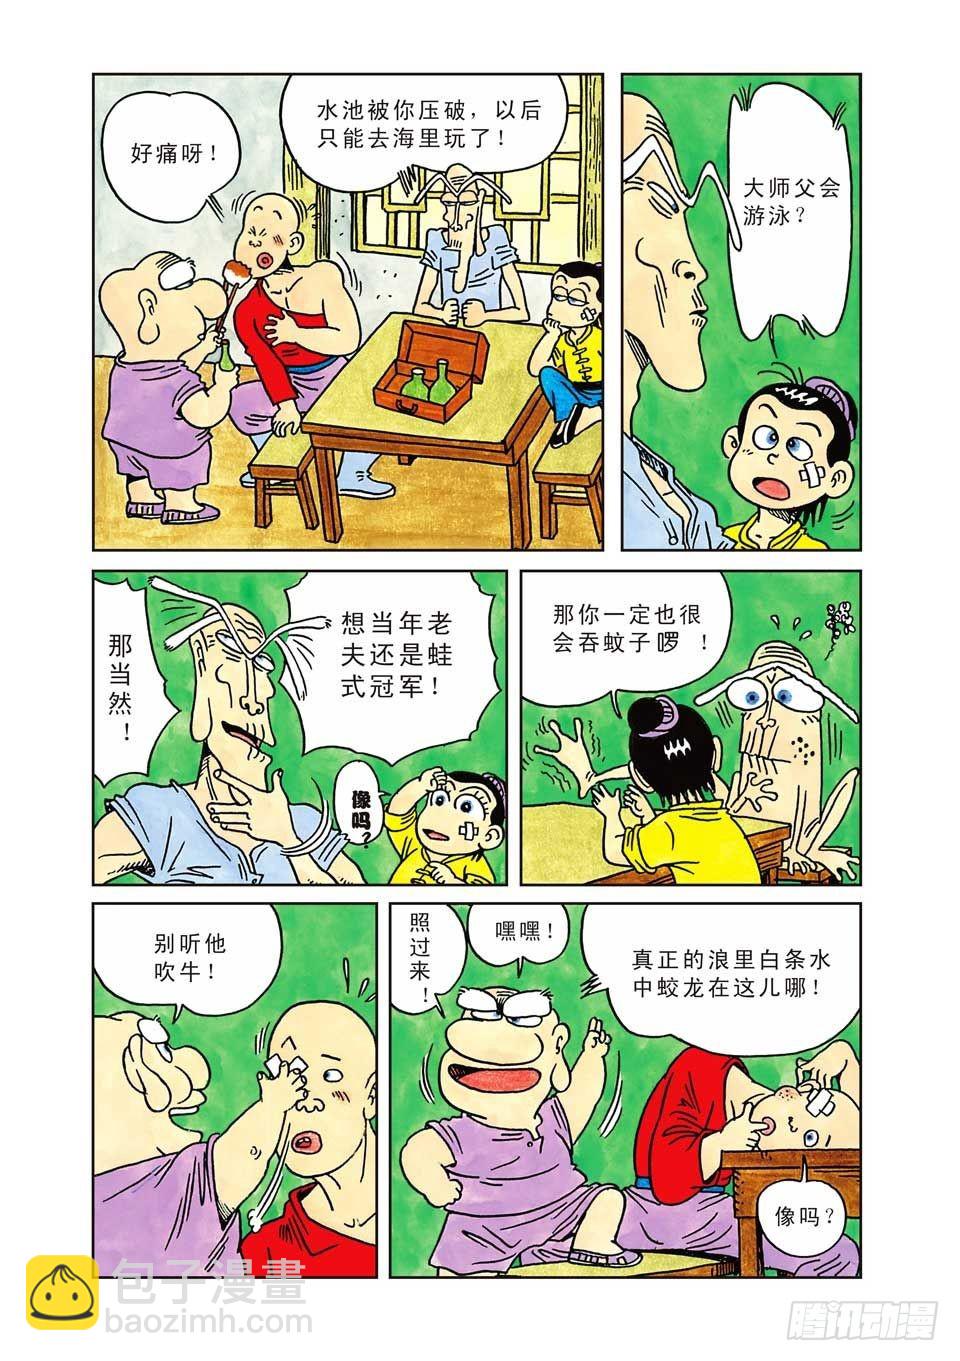 乌龙院爆笑漫画系列七鲜鱼丸 - 第1集 - 2